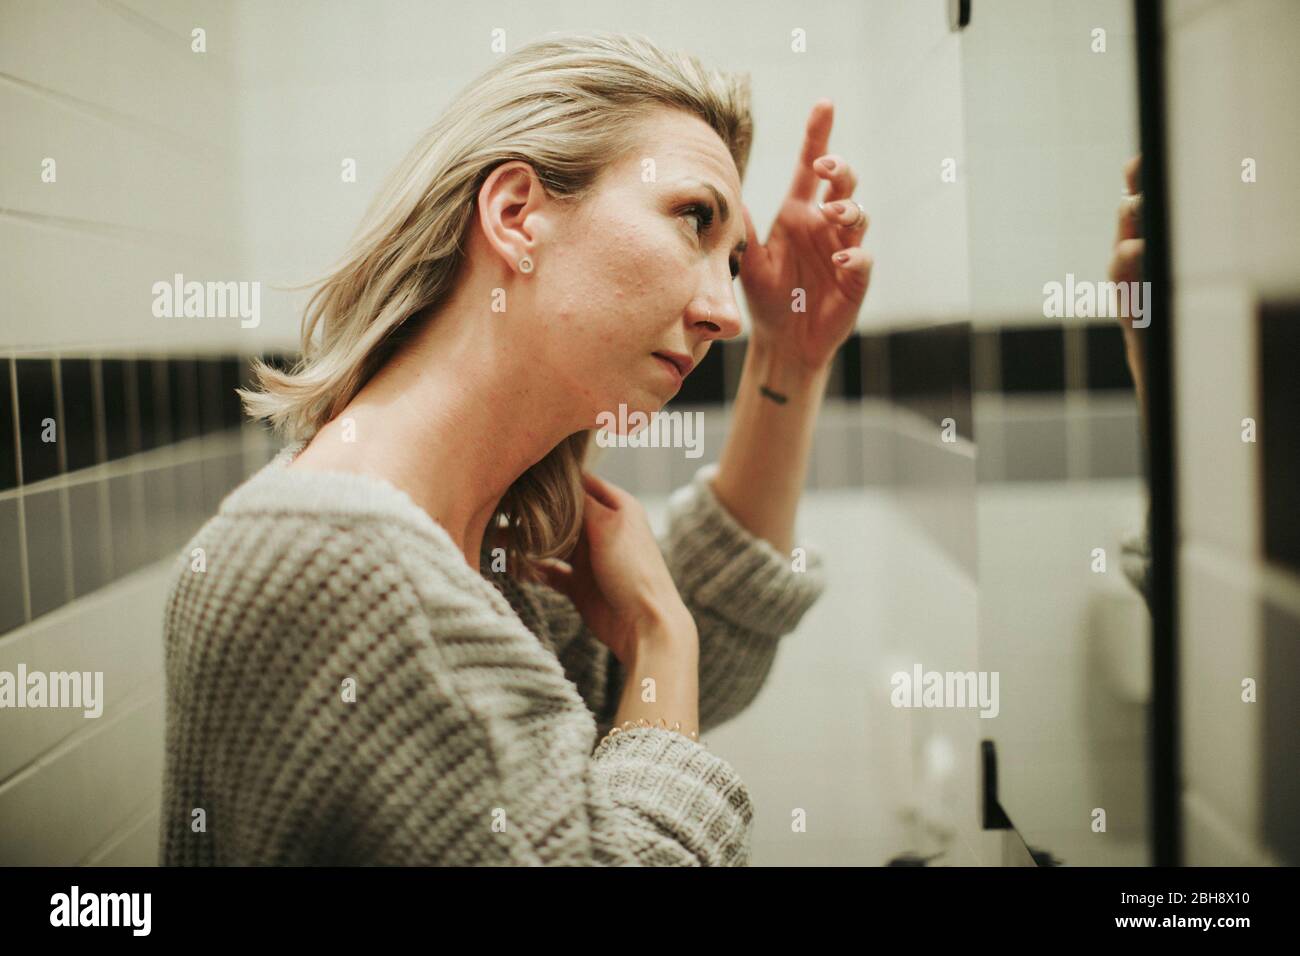 Frau im Badezimmer, betrachtet kritisch ihr Spiegelbild Stock Photo